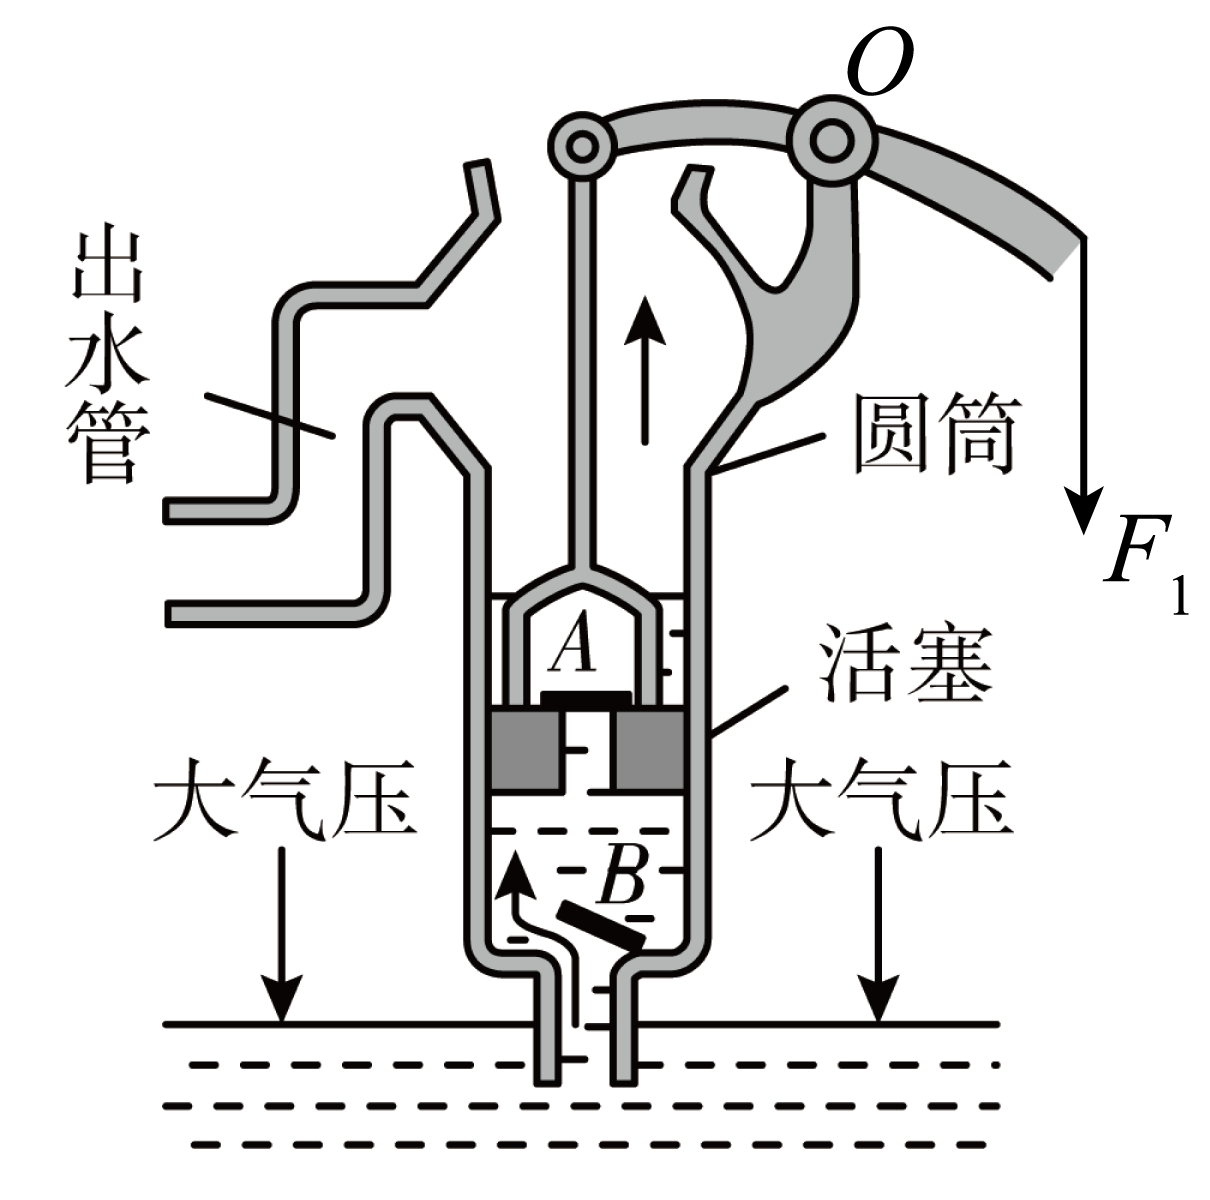 如图所示为活塞式抽水机的工作原理示意图它是利用